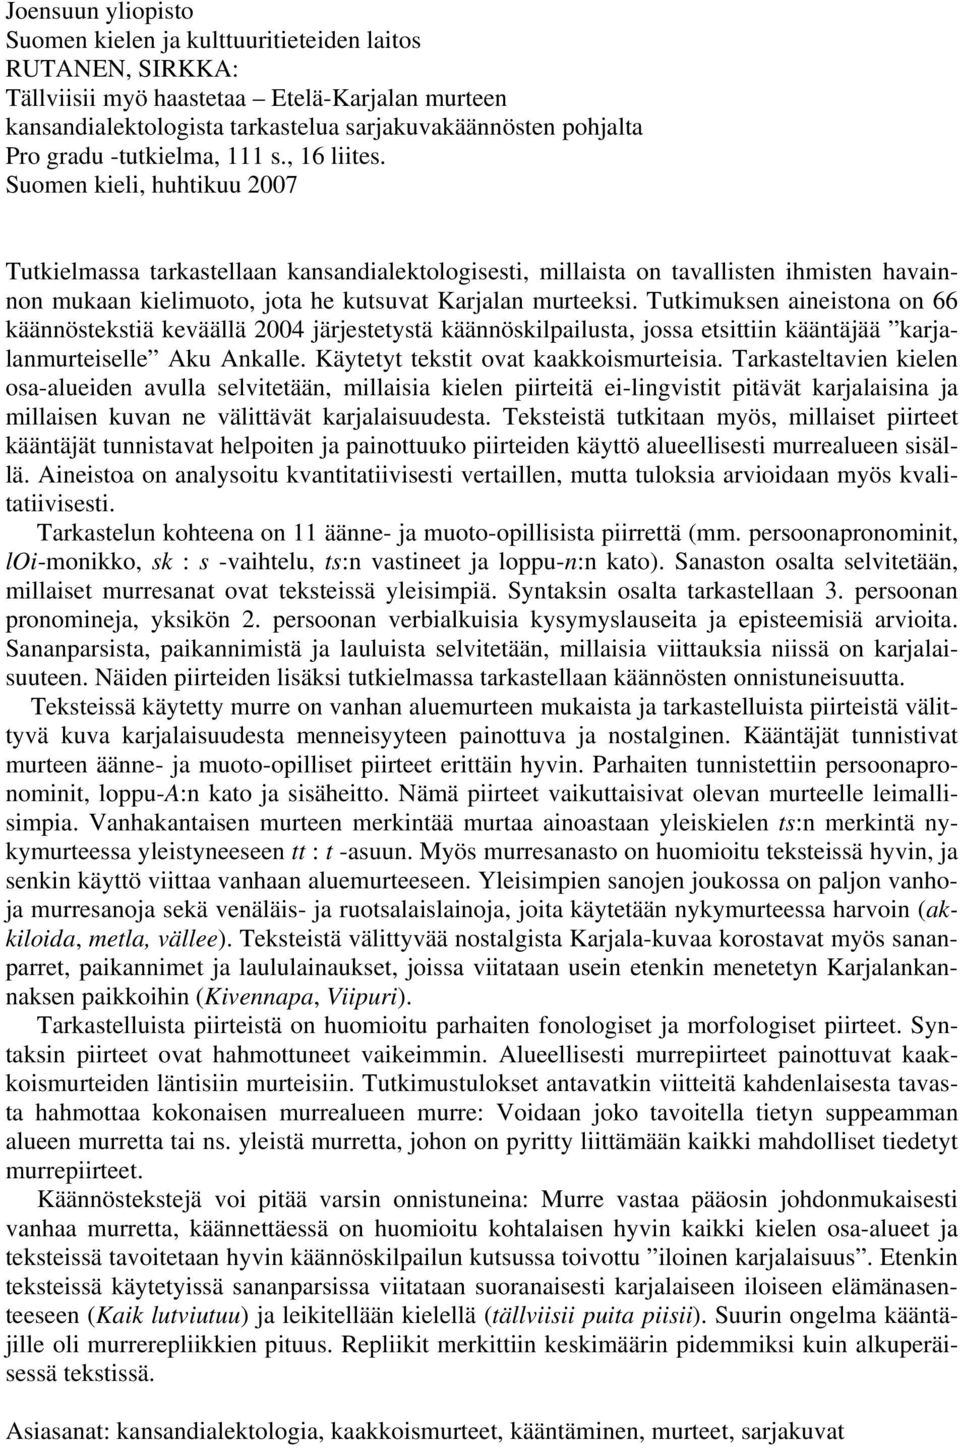 Suomen kieli, huhtikuu 2007 Tutkielmassa tarkastellaan kansandialektologisesti, millaista on tavallisten ihmisten havainnon mukaan kielimuoto, jota he kutsuvat Karjalan murteeksi.